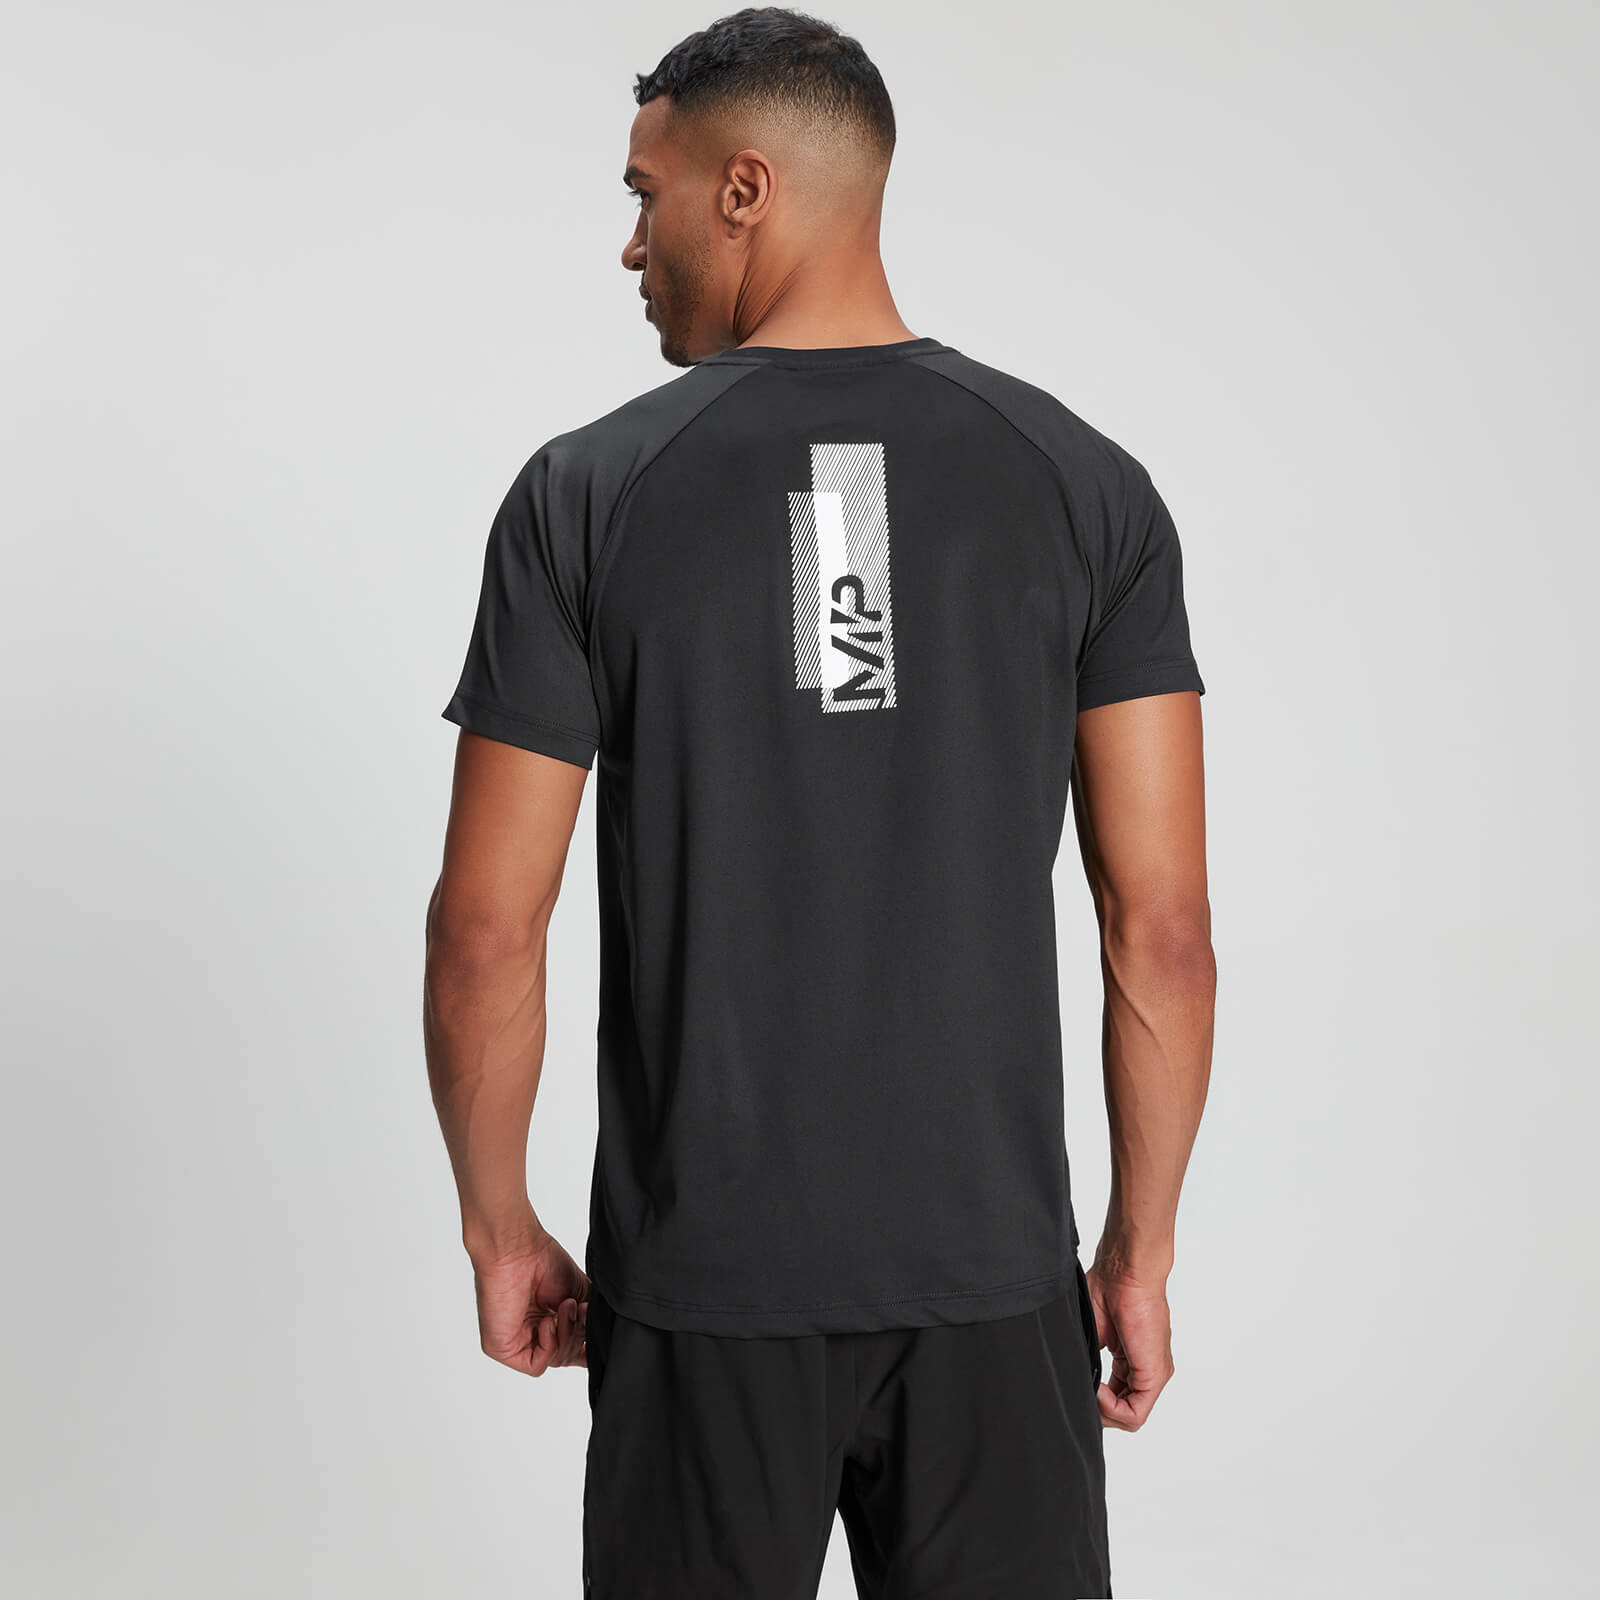 Camiseta de manga corta de entrenamiento estampada para hombre - Negro - M